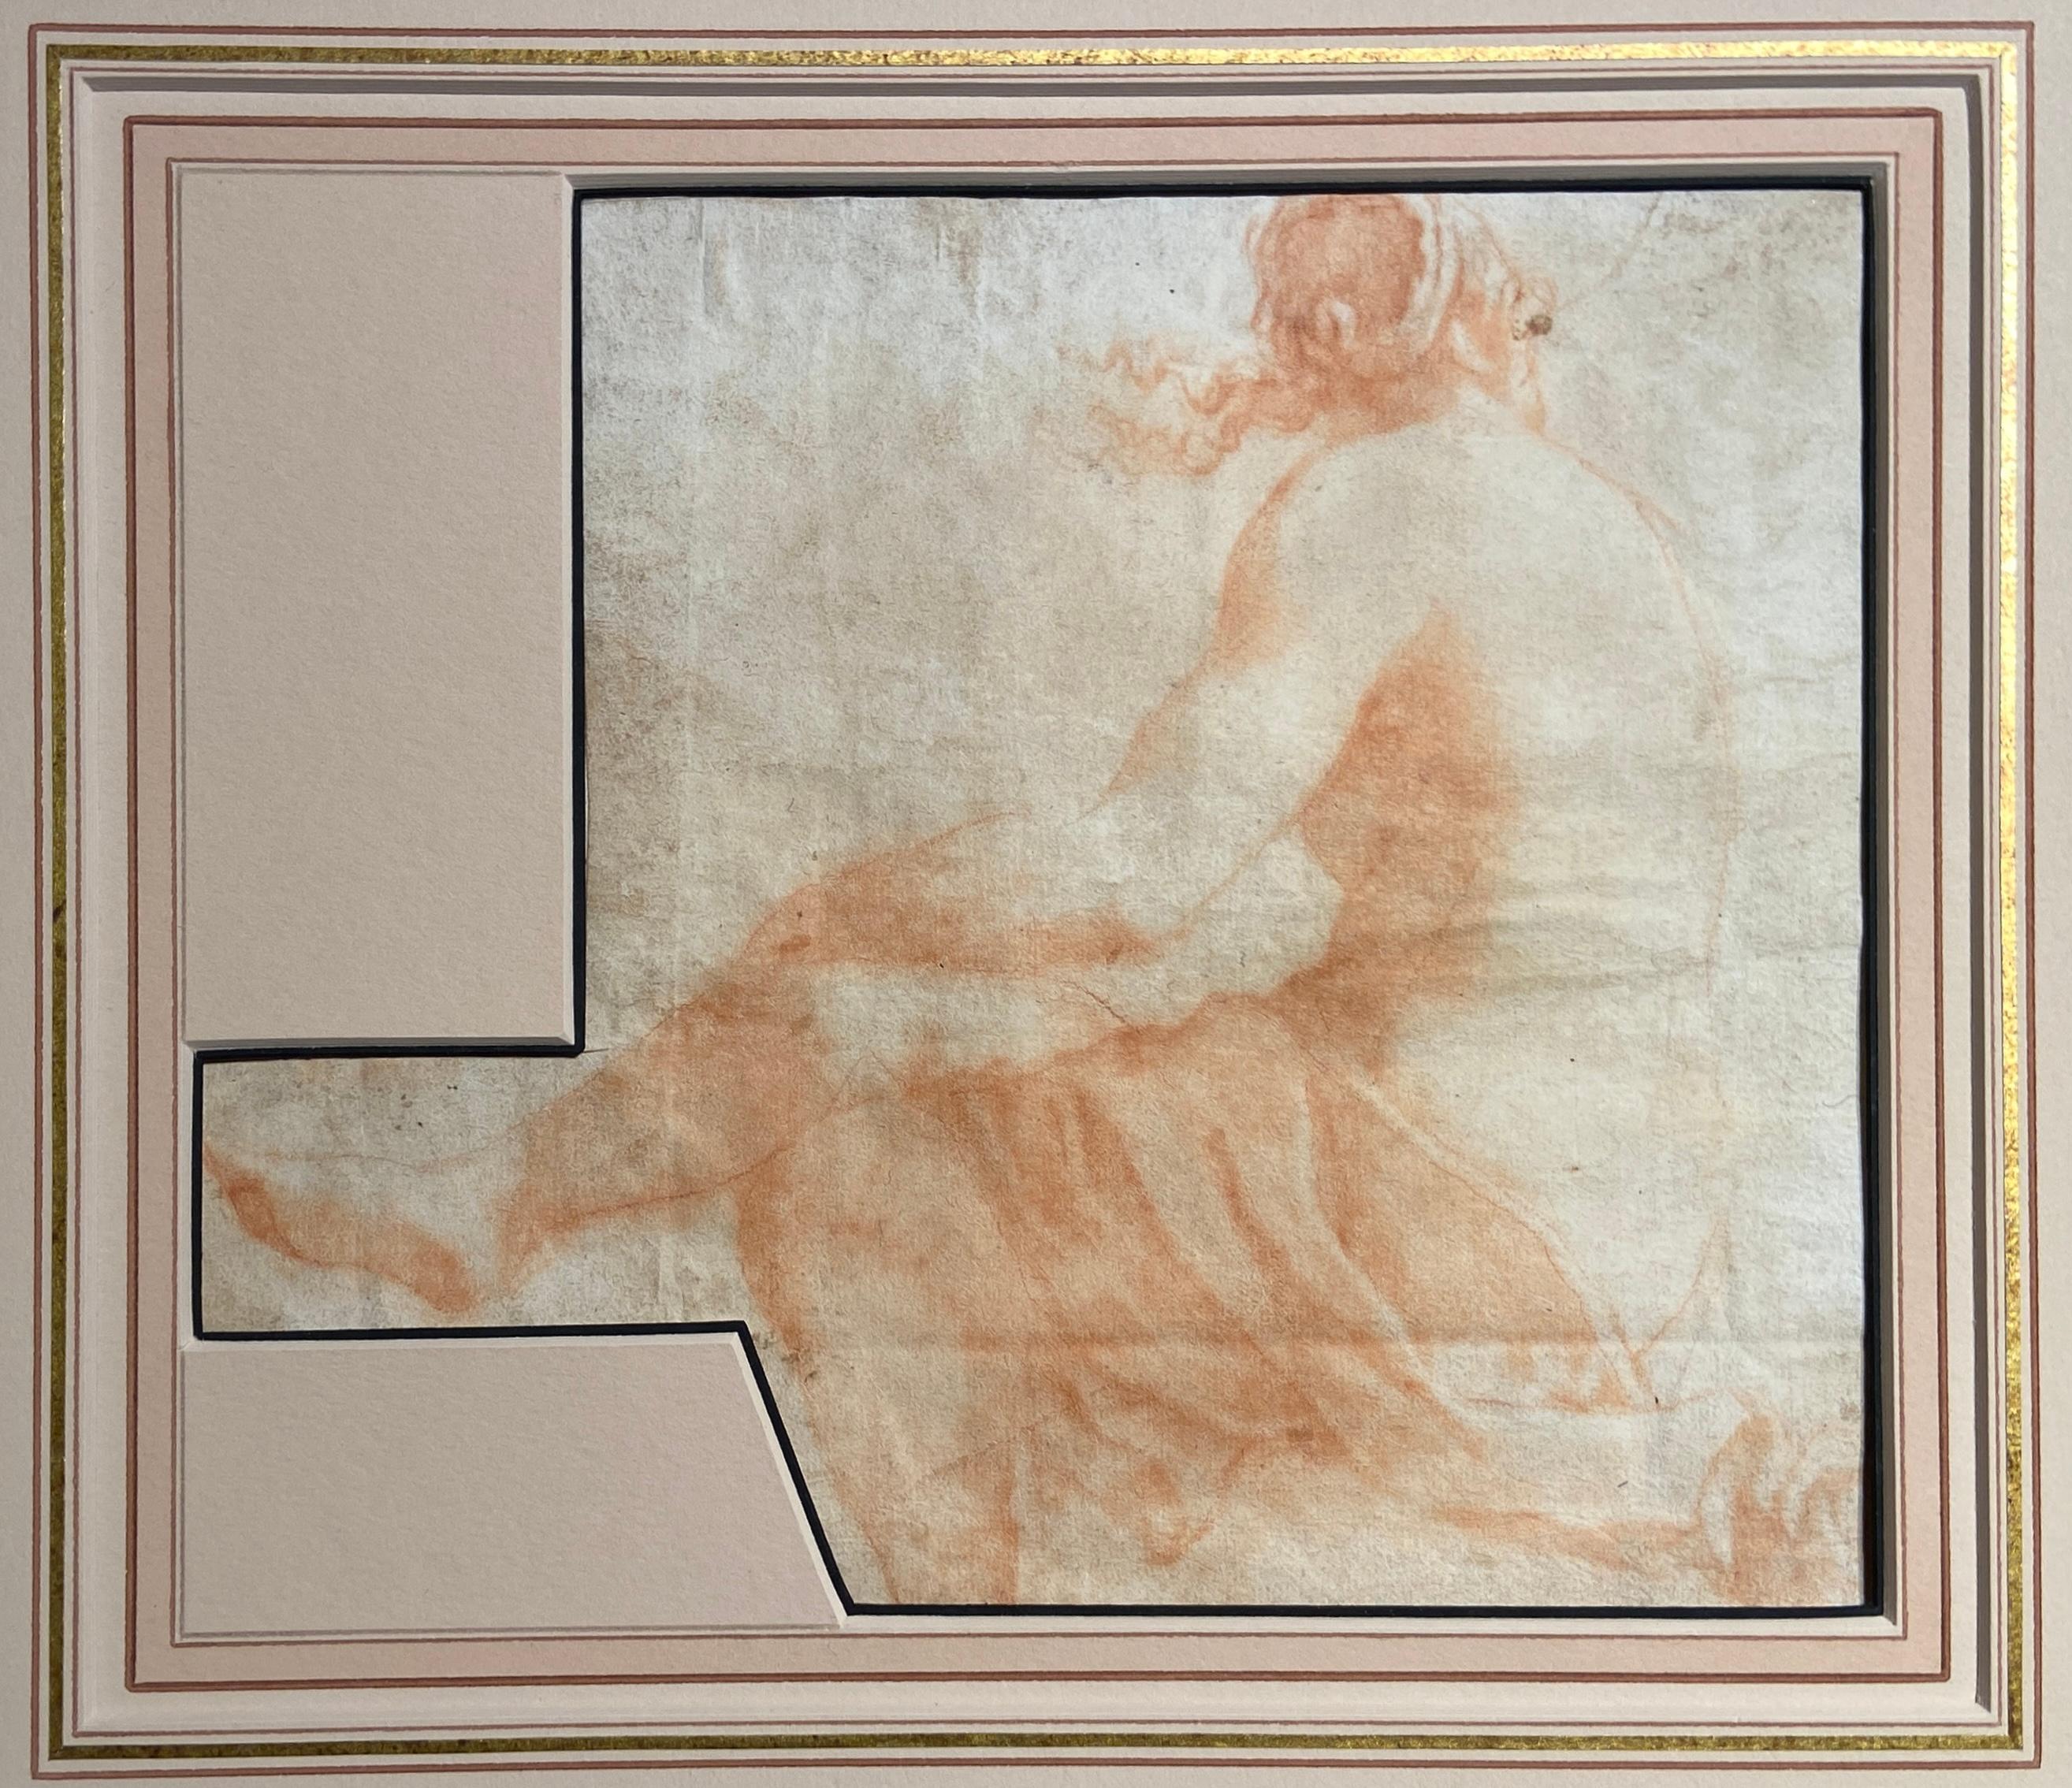 Chalkzeichnung Alter Meister, Italienische Sanguine-Zeichnung auf Papier, 17. Jahrhundert